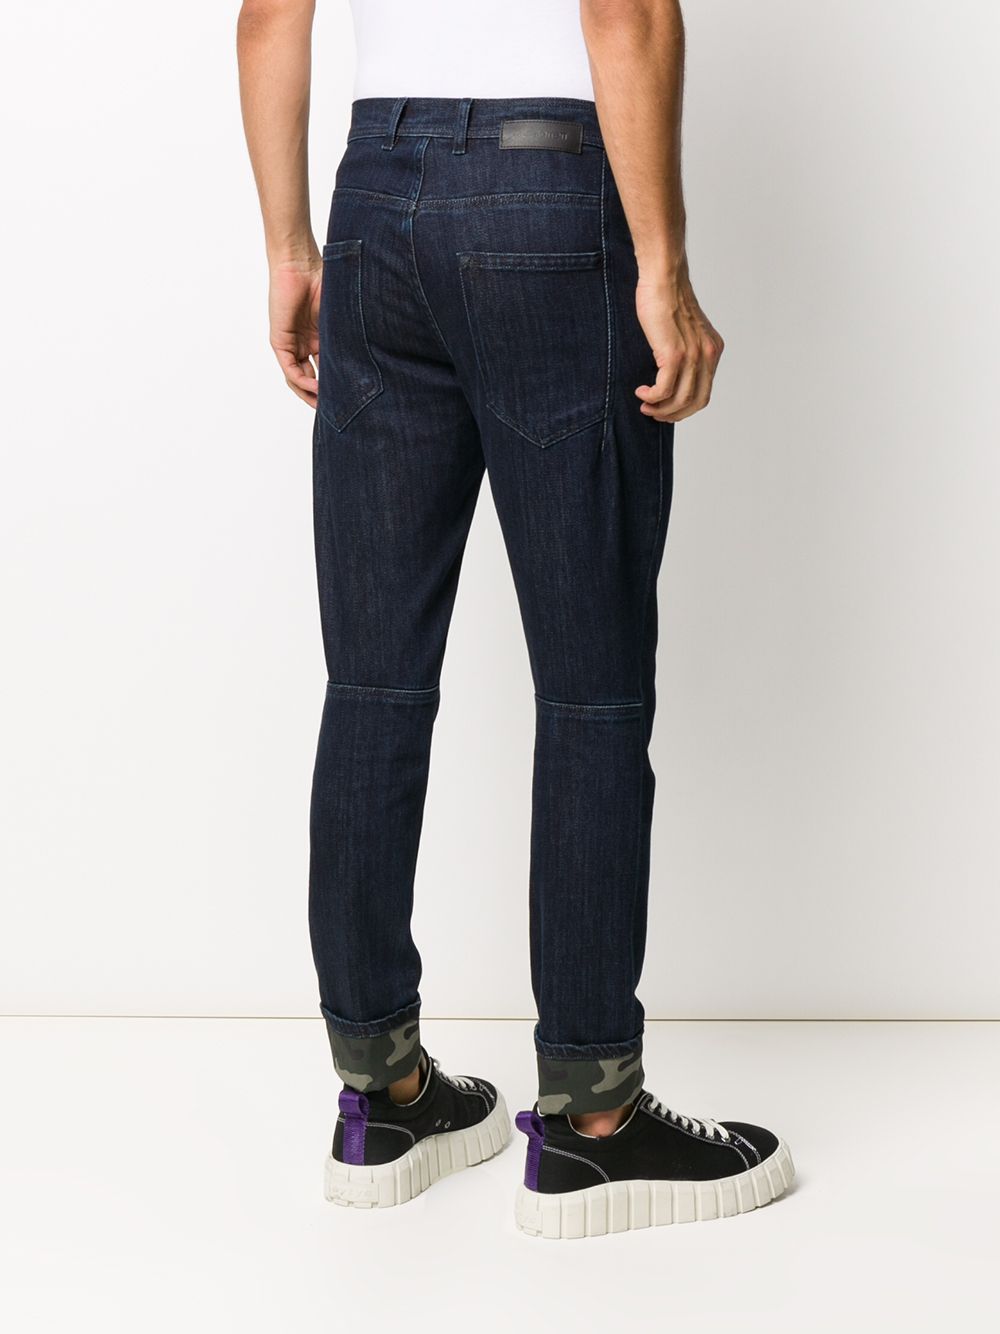 фото Neil barrett джинсы скинни с камуфляжным принтом